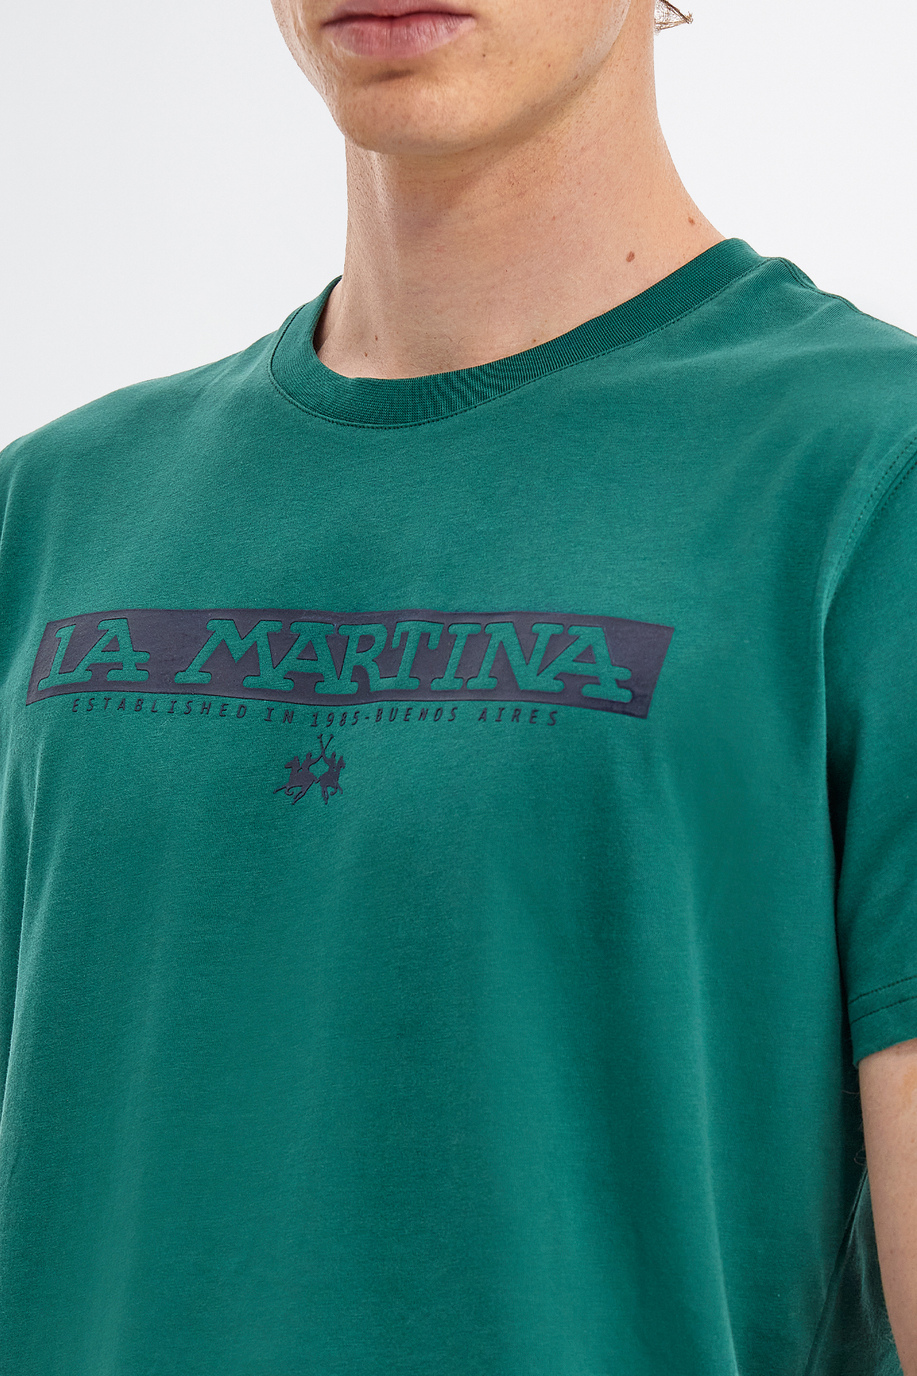 Men’s short-sleeved regular fit crew neck t-shirt - Gifts under CHF 85 for him | La Martina - Official Online Shop